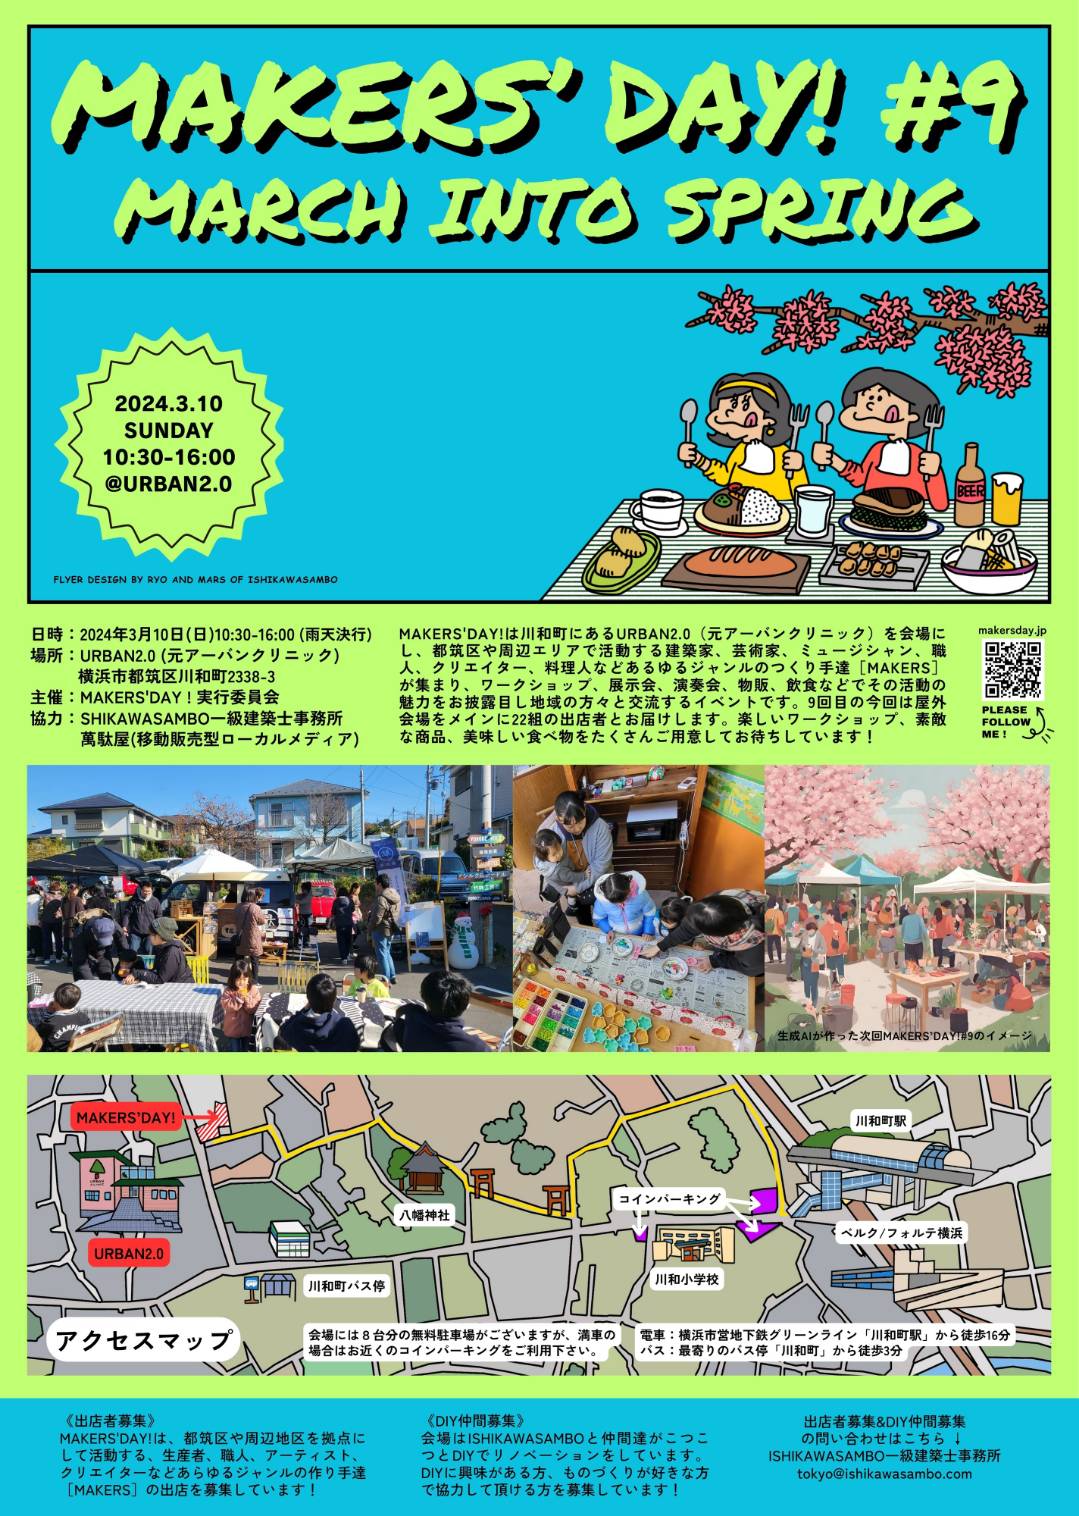 萬駄屋がISHIKAWASAMBO一級建築士事務所様と川和町URBAN 2.0で「MAKERS’ DAY! #9」を開催します